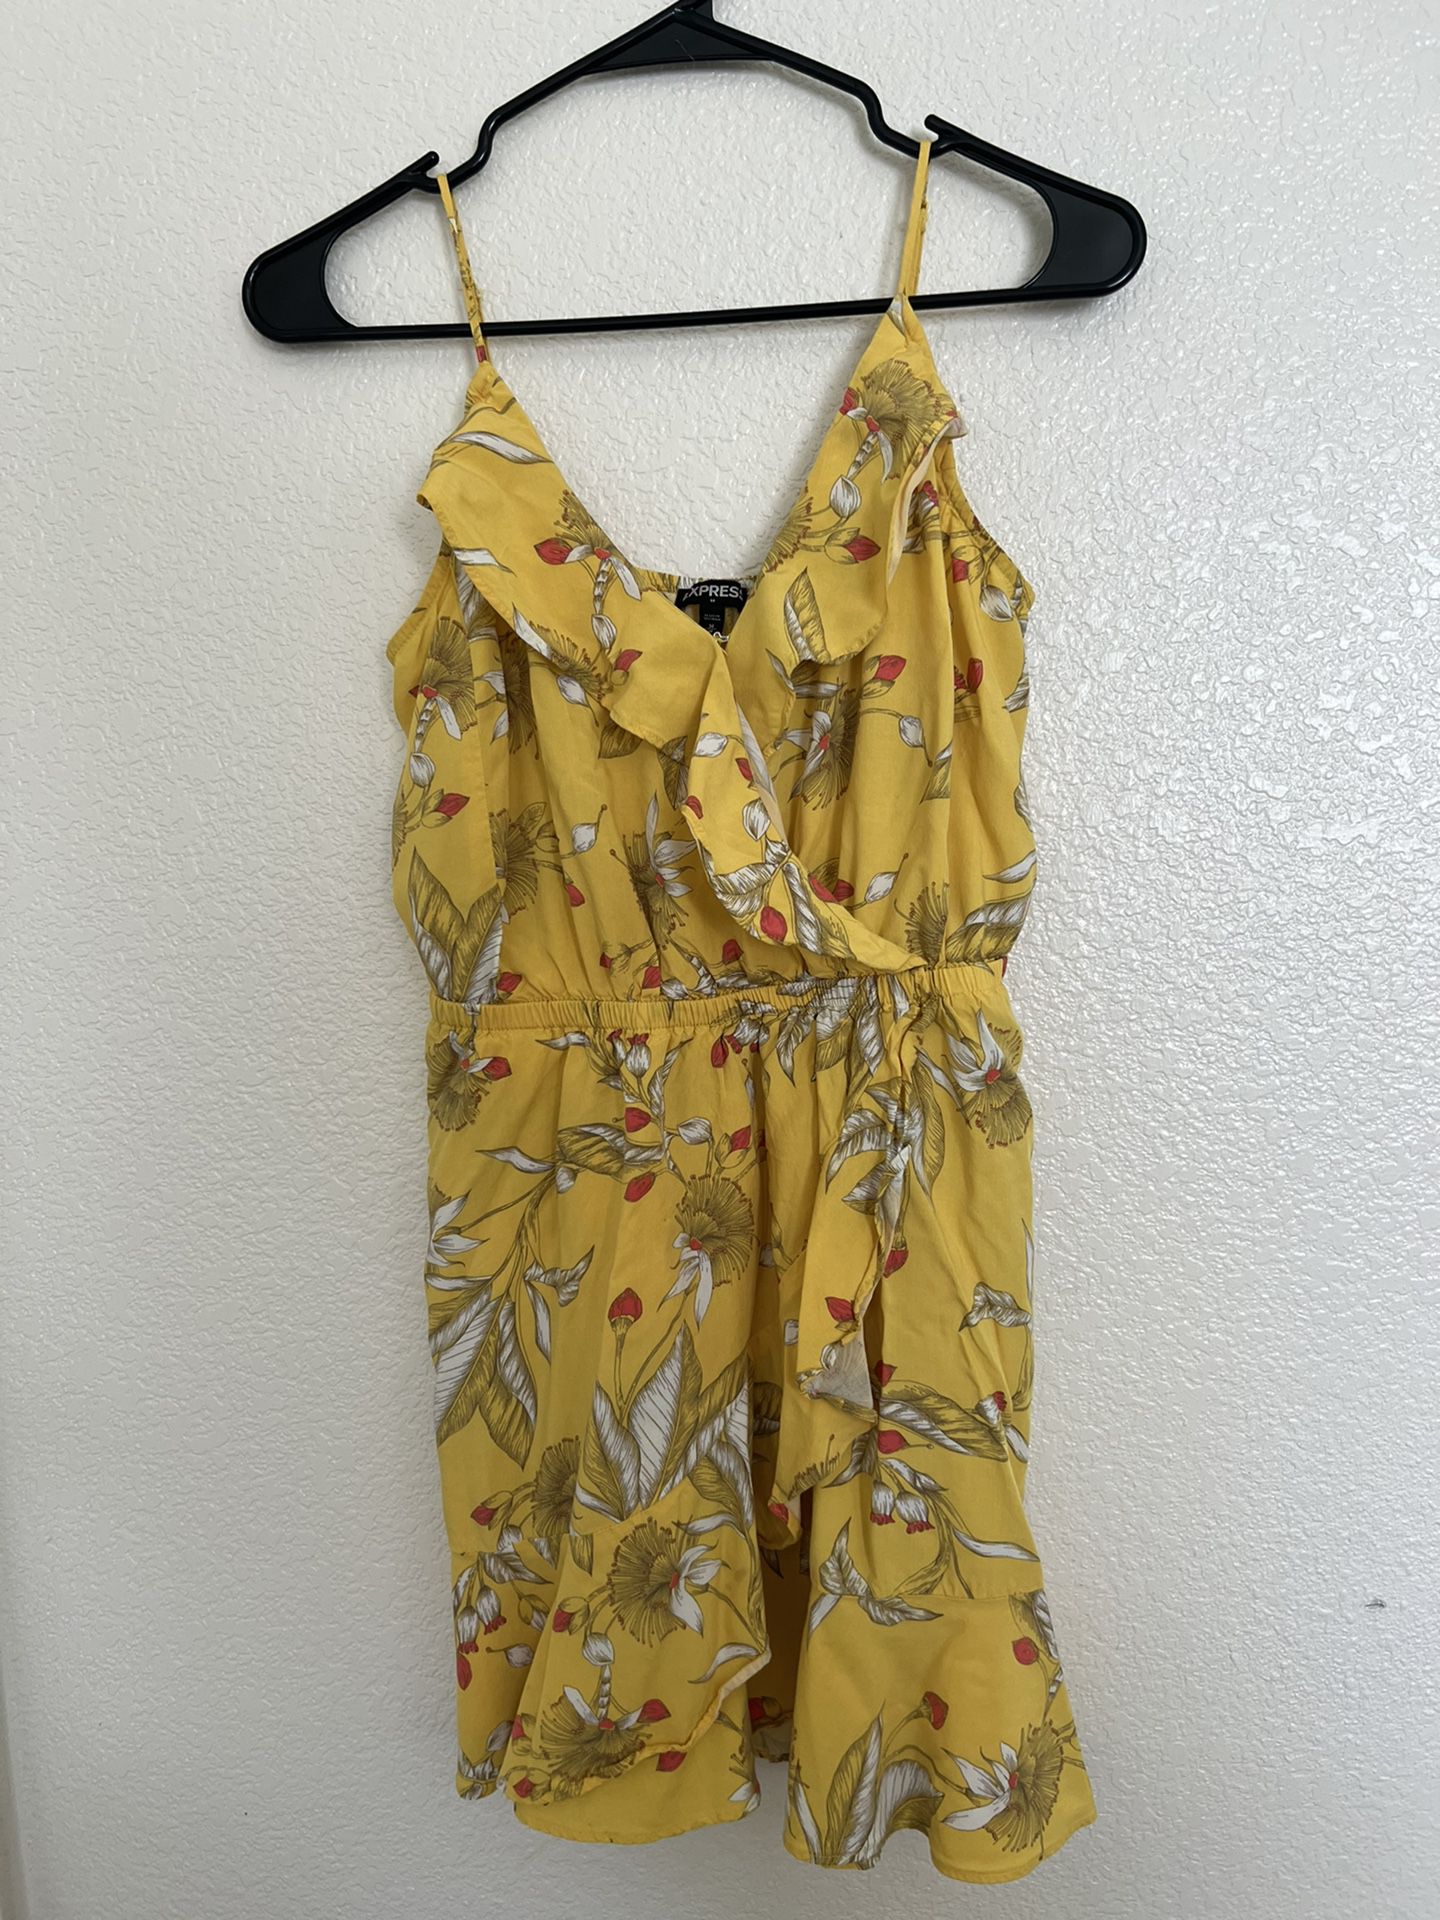 Express Women’s Sundress Yellow Floral Dress Size Medium 